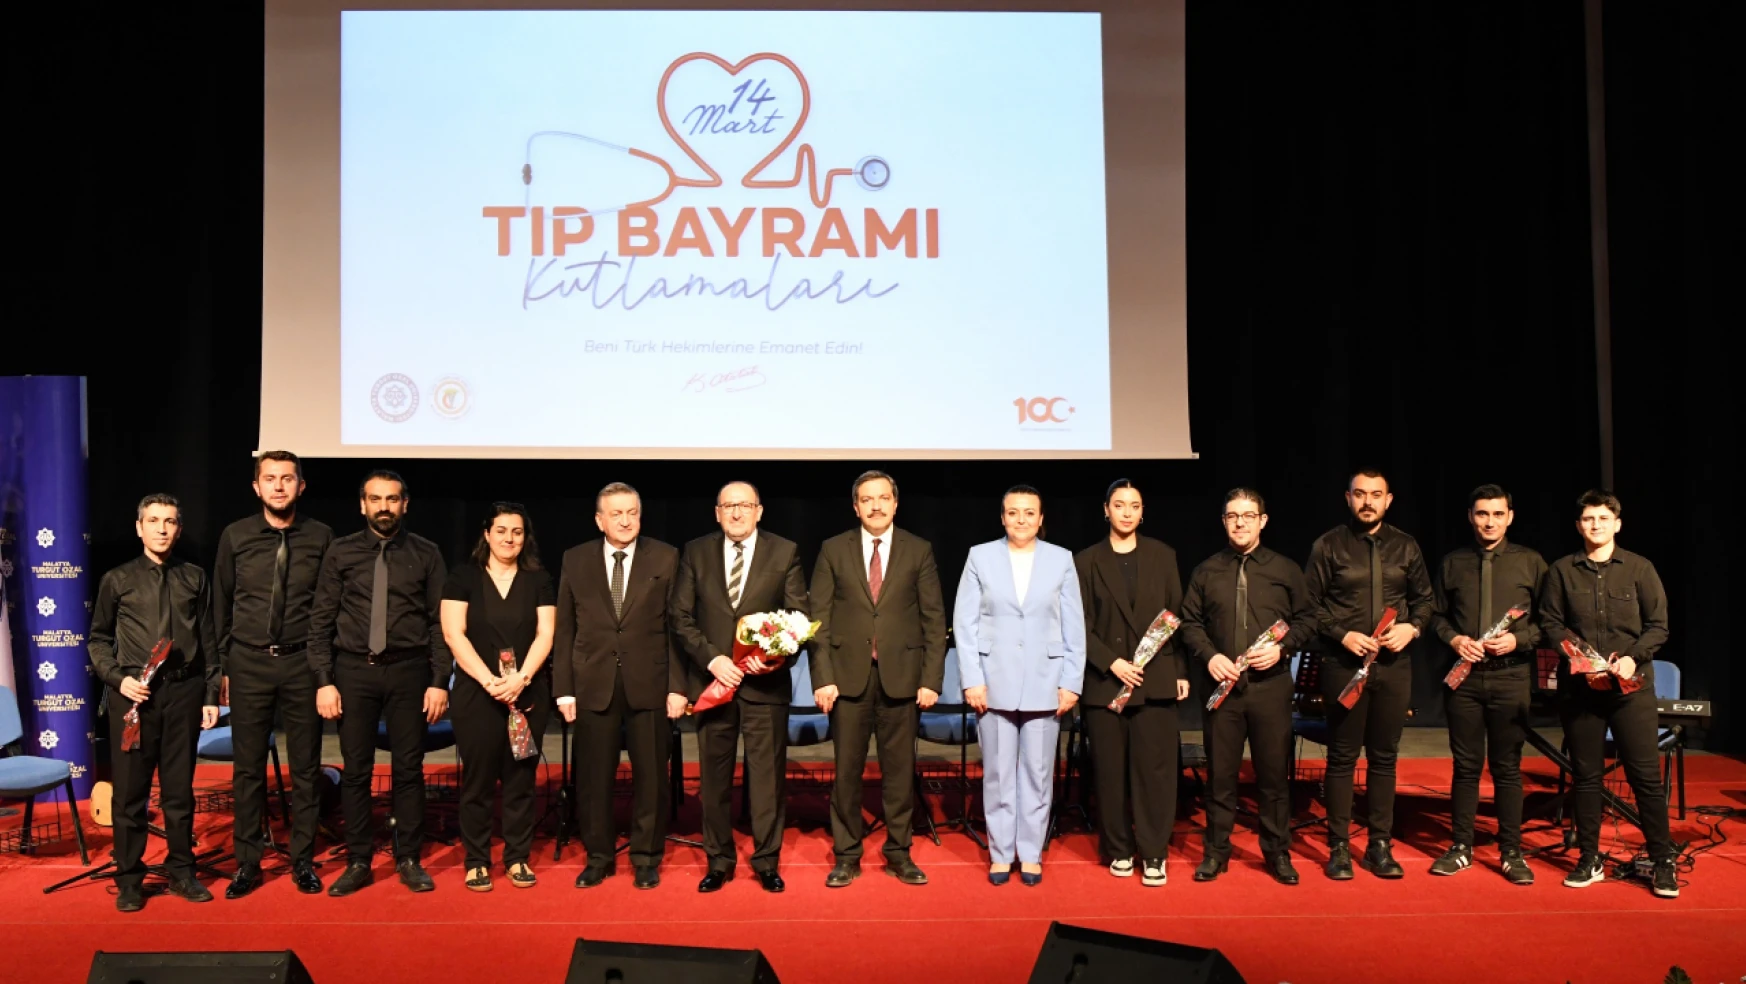 Malatya Turgut Özal Üniversitesinde 14 Mart Tıp Bayramı kutlama programı düzenlendi.